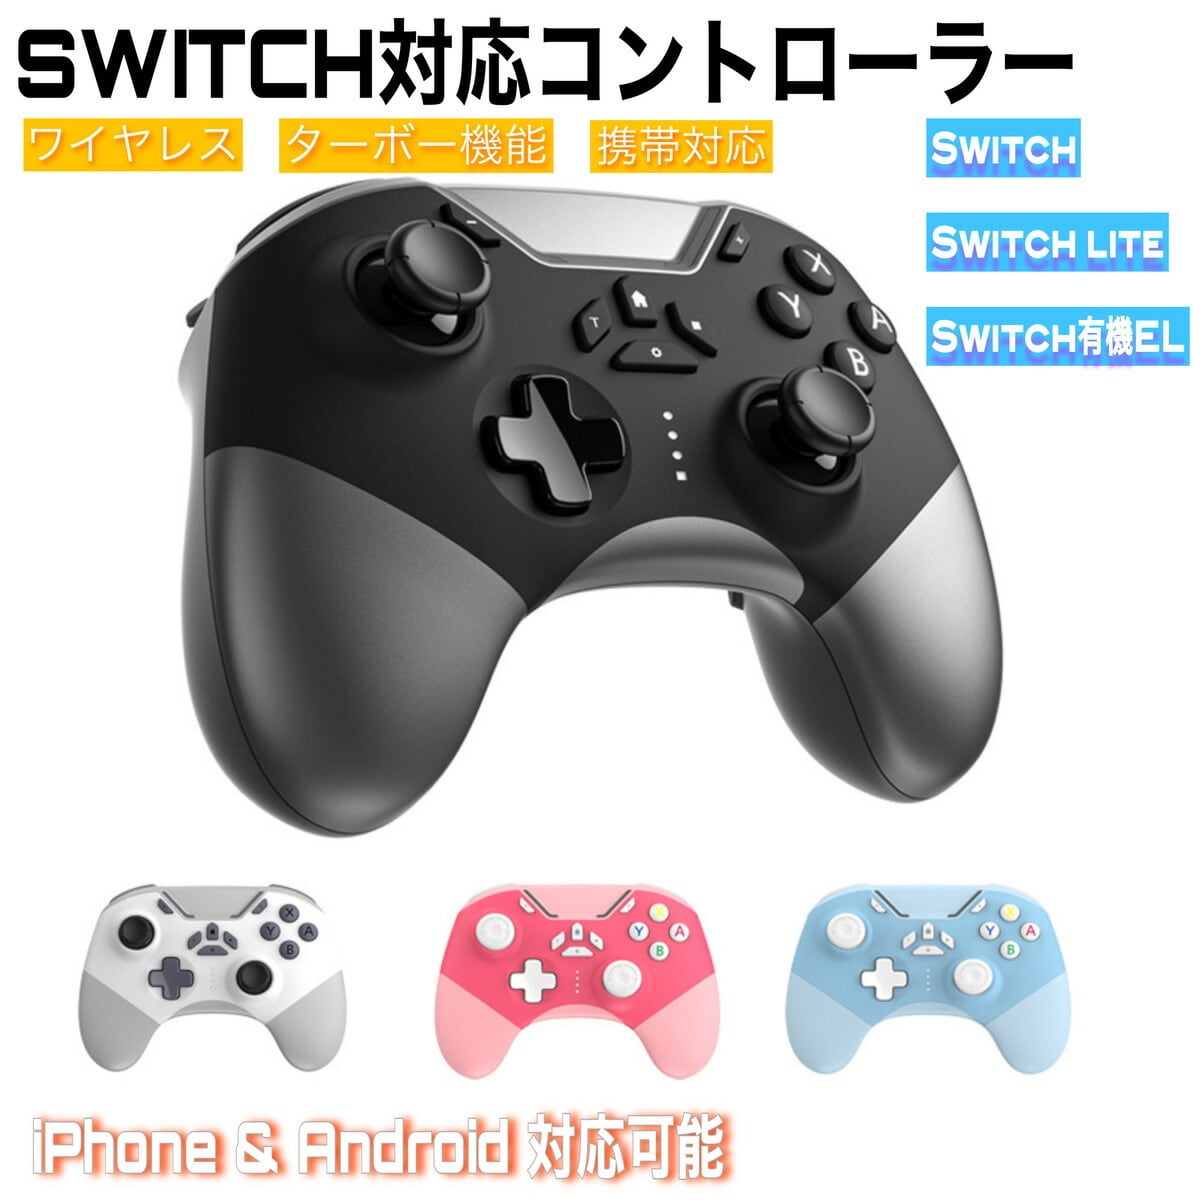 Switch コントローラー4家庭用ゲーム機本体